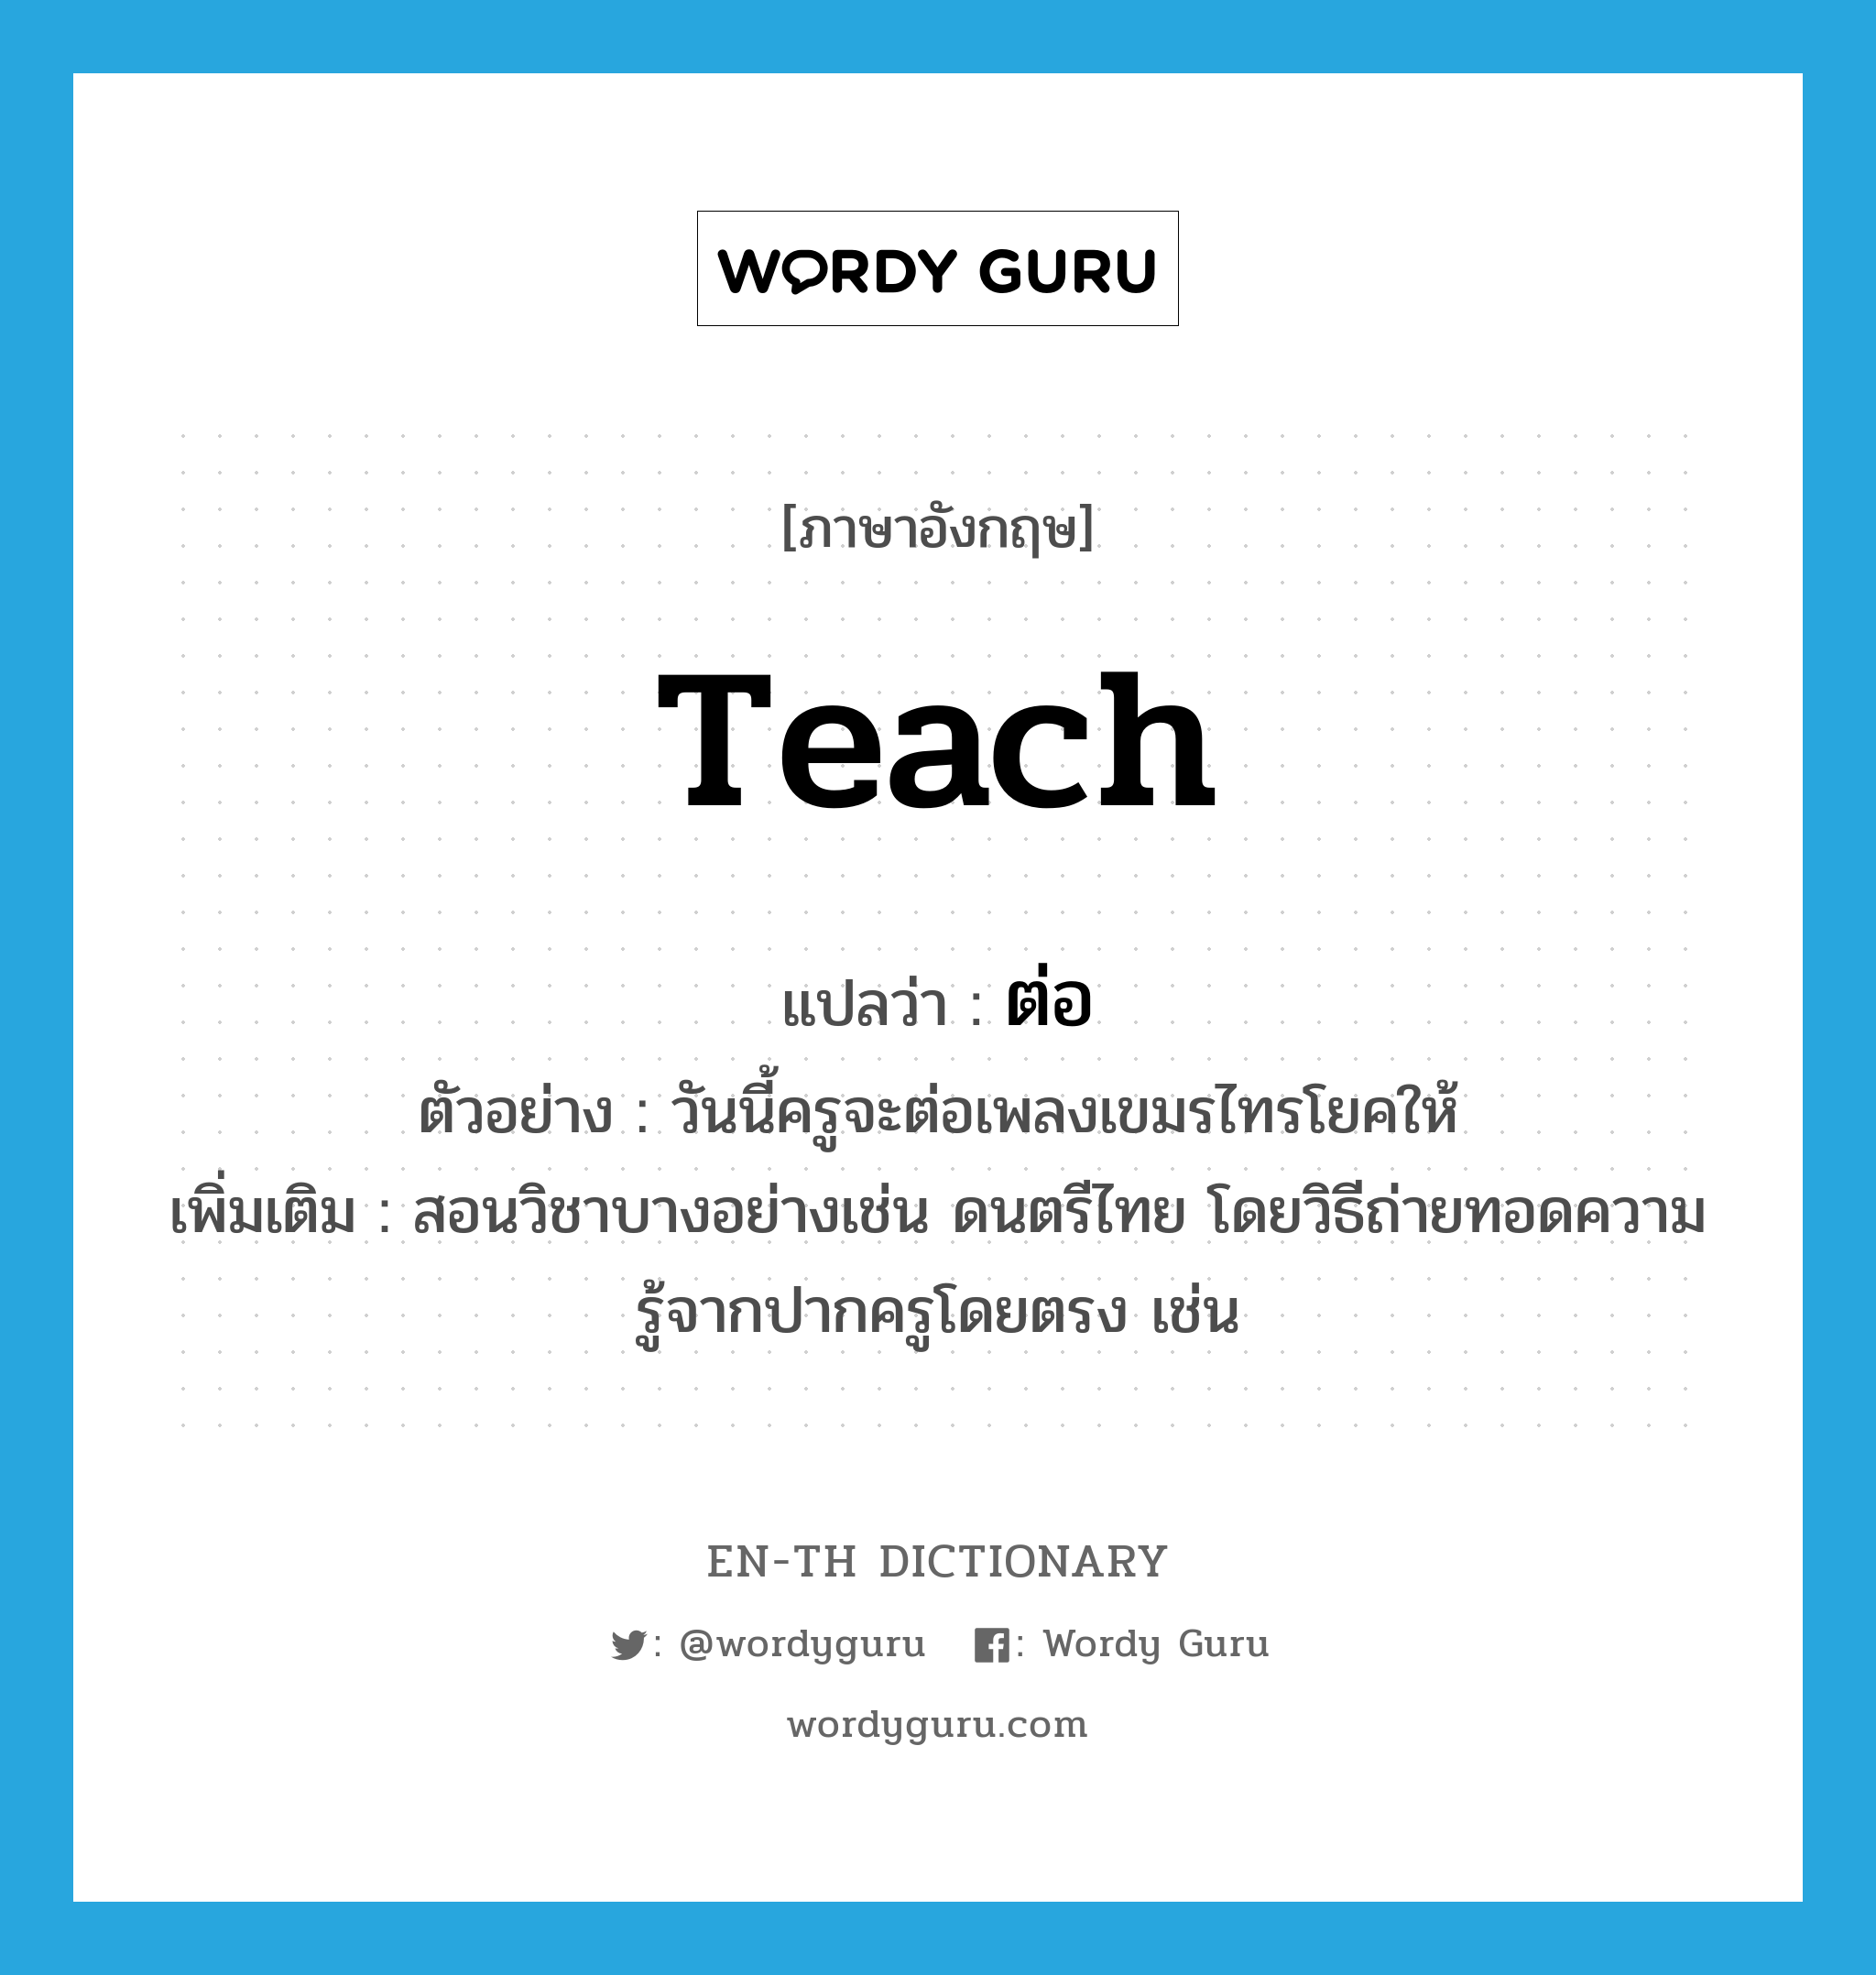 ต่อ ภาษาอังกฤษ?, คำศัพท์ภาษาอังกฤษ ต่อ แปลว่า teach ประเภท V ตัวอย่าง วันนี้ครูจะต่อเพลงเขมรไทรโยคให้ เพิ่มเติม สอนวิชาบางอย่างเช่น ดนตรีไทย โดยวิธีถ่ายทอดความรู้จากปากครูโดยตรง เช่น หมวด V